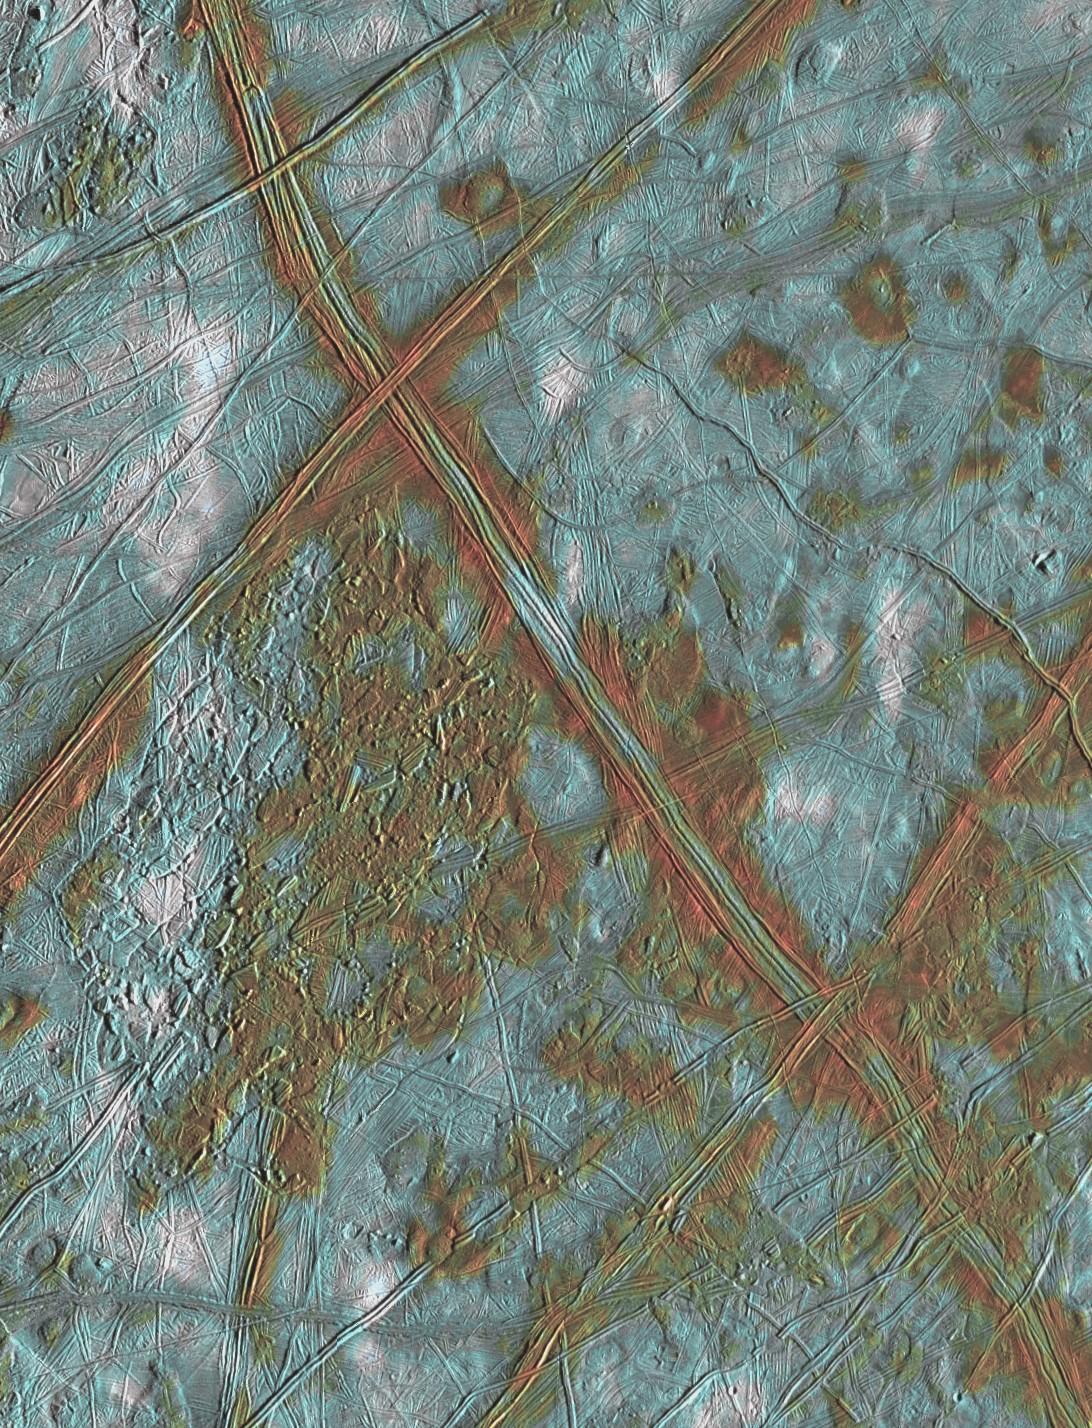 Europe, le satellite glacé de Jupiter, possède une surface de dômes et de crêtes avec un terrain perturbé comprenant des plaques crustales qui se sont brisées et repositionnées. Les zones rougeâtres sont associées à une activité géologique interne; le bleu correspond à des plaines glacées relativement anciennes. [NASA - JPL/University of Arizona]